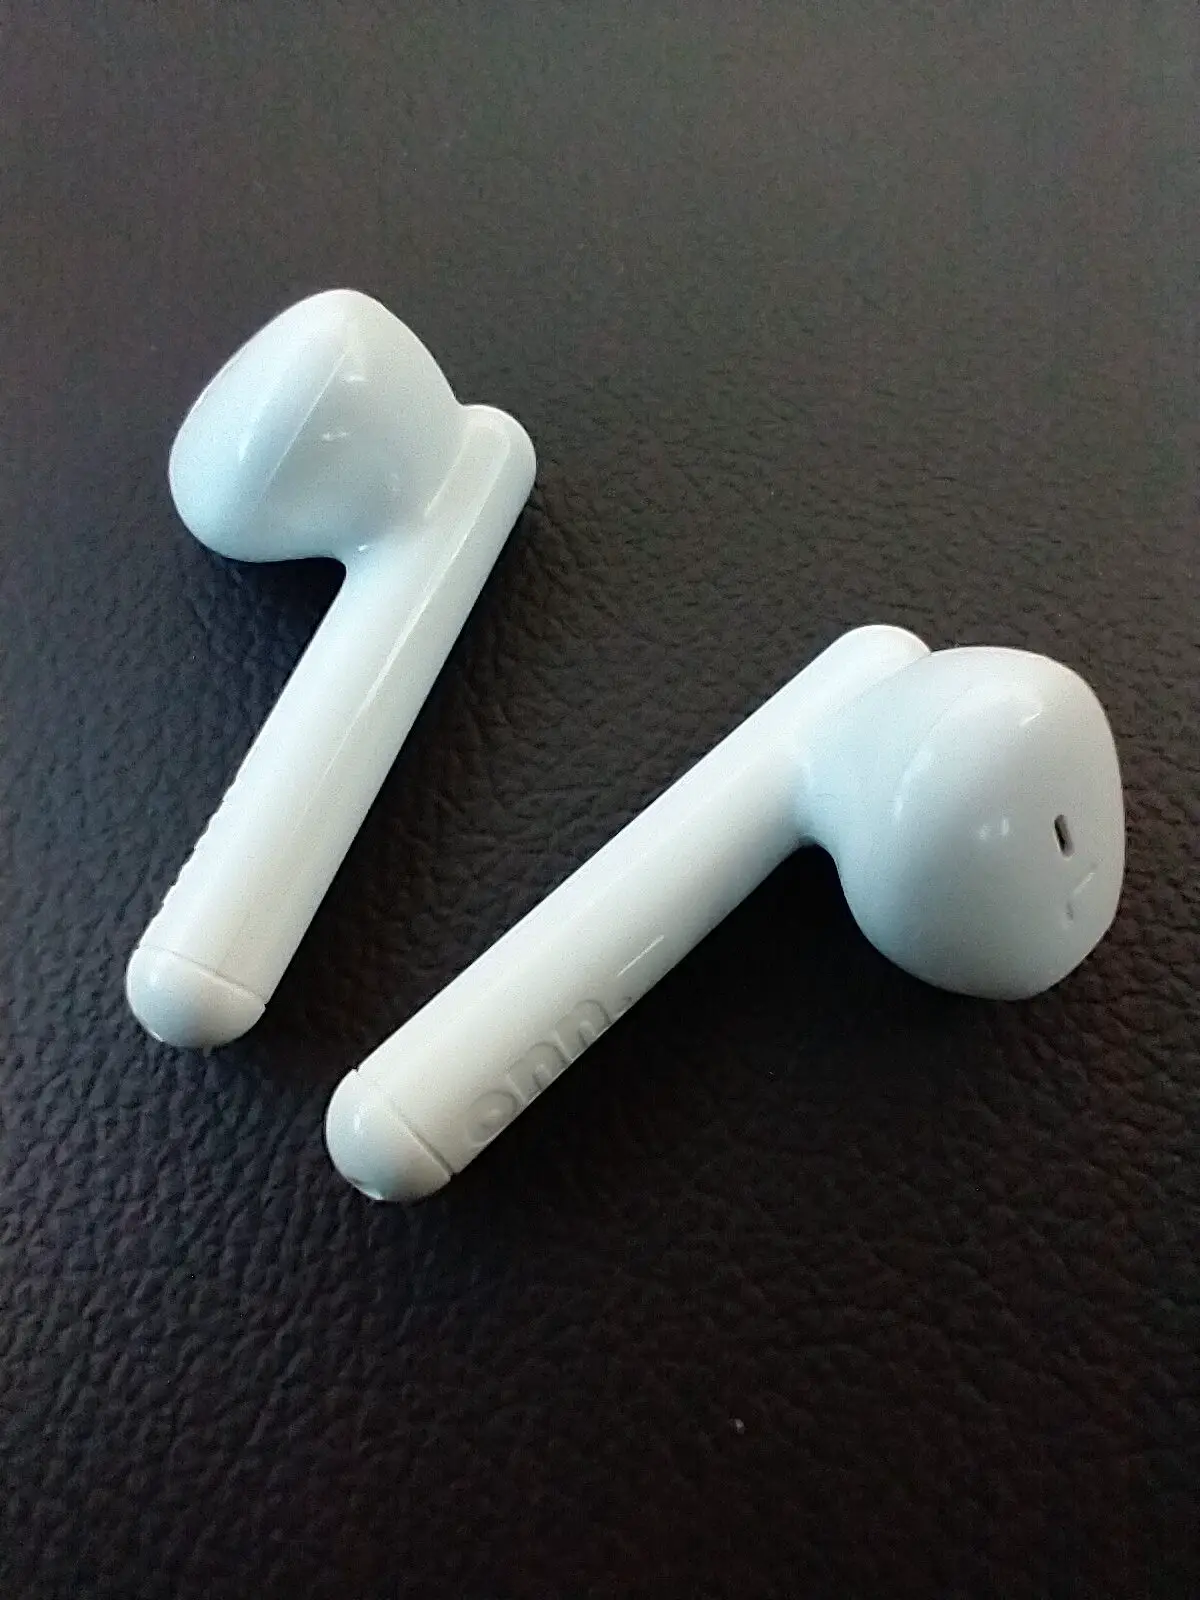 onn wireless earbuds